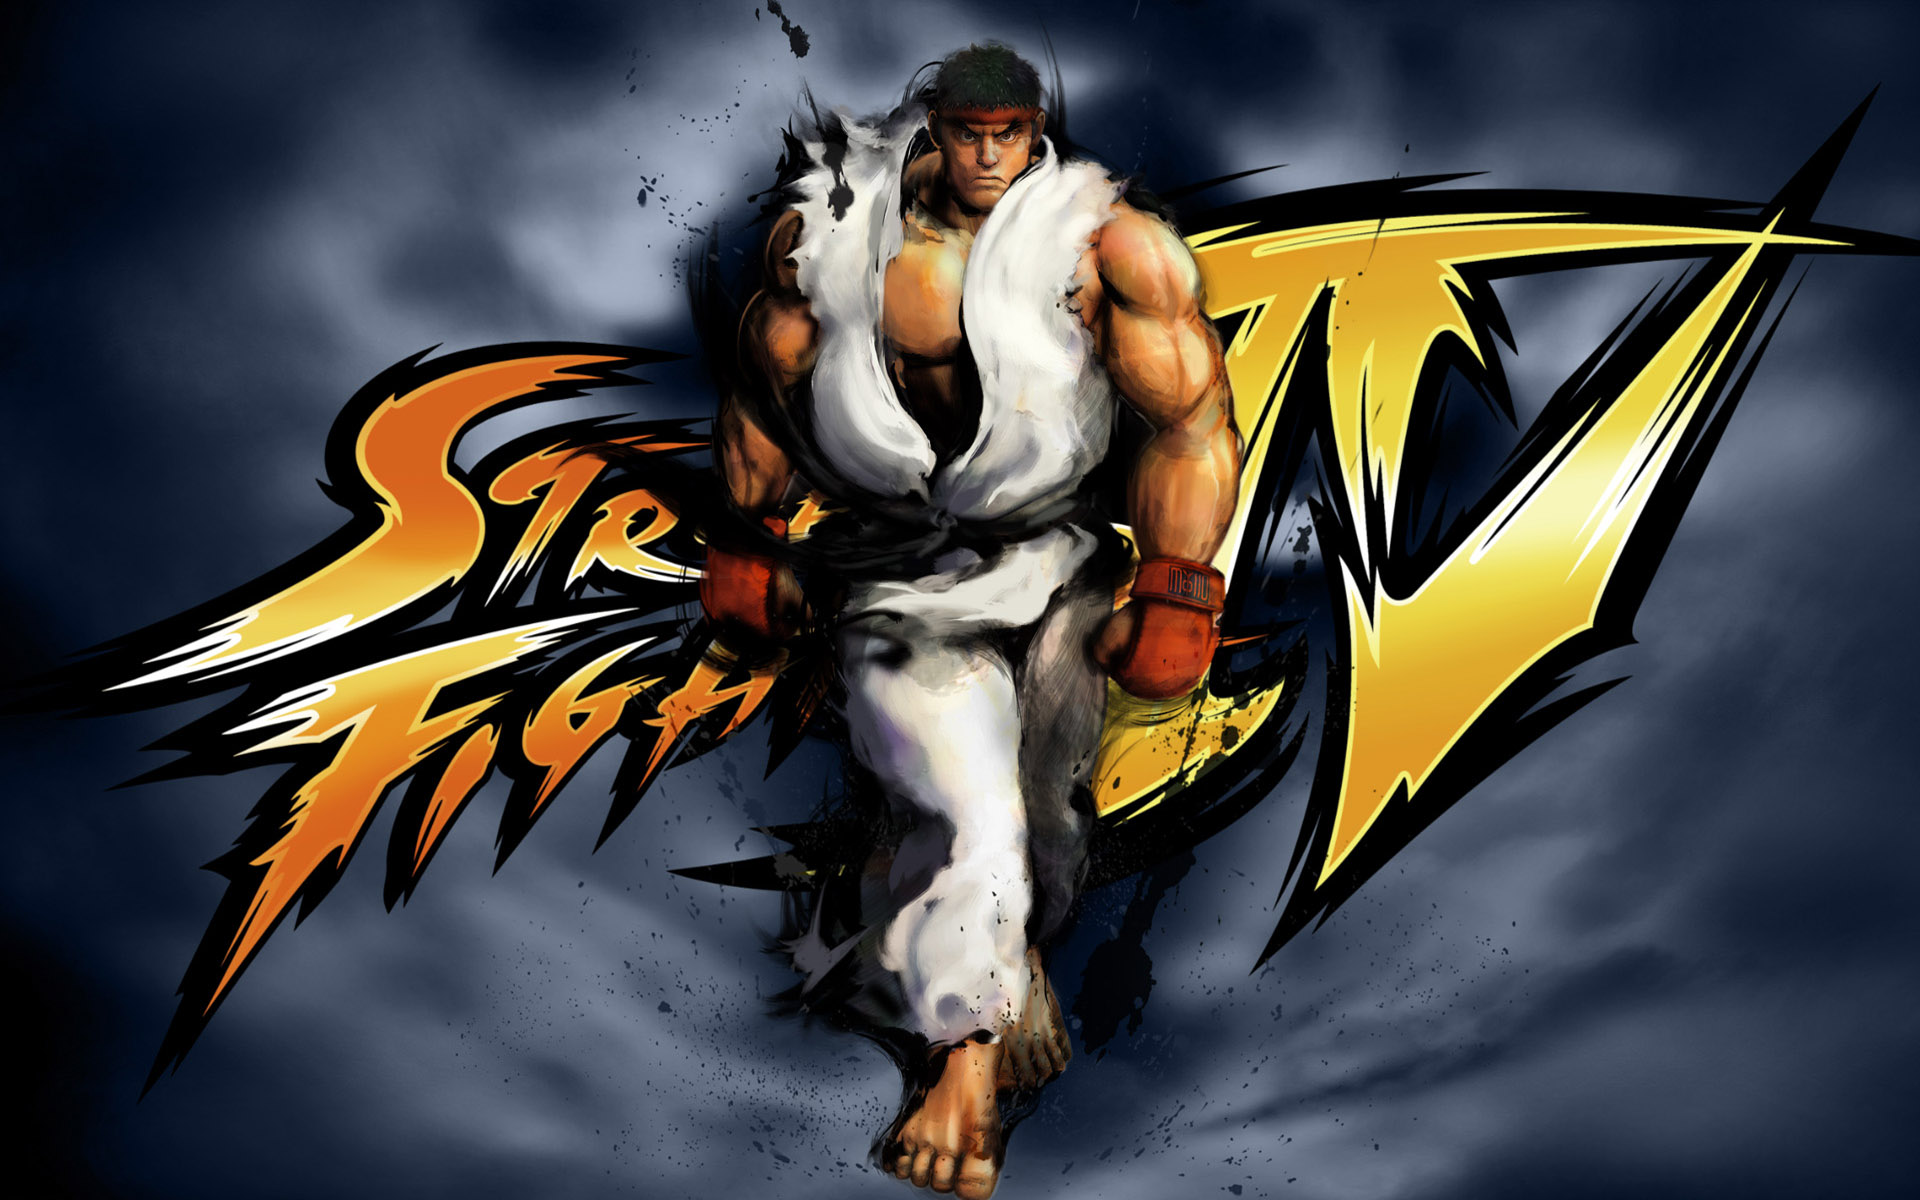 Street Fighter HD Games Wallpaper 1080p